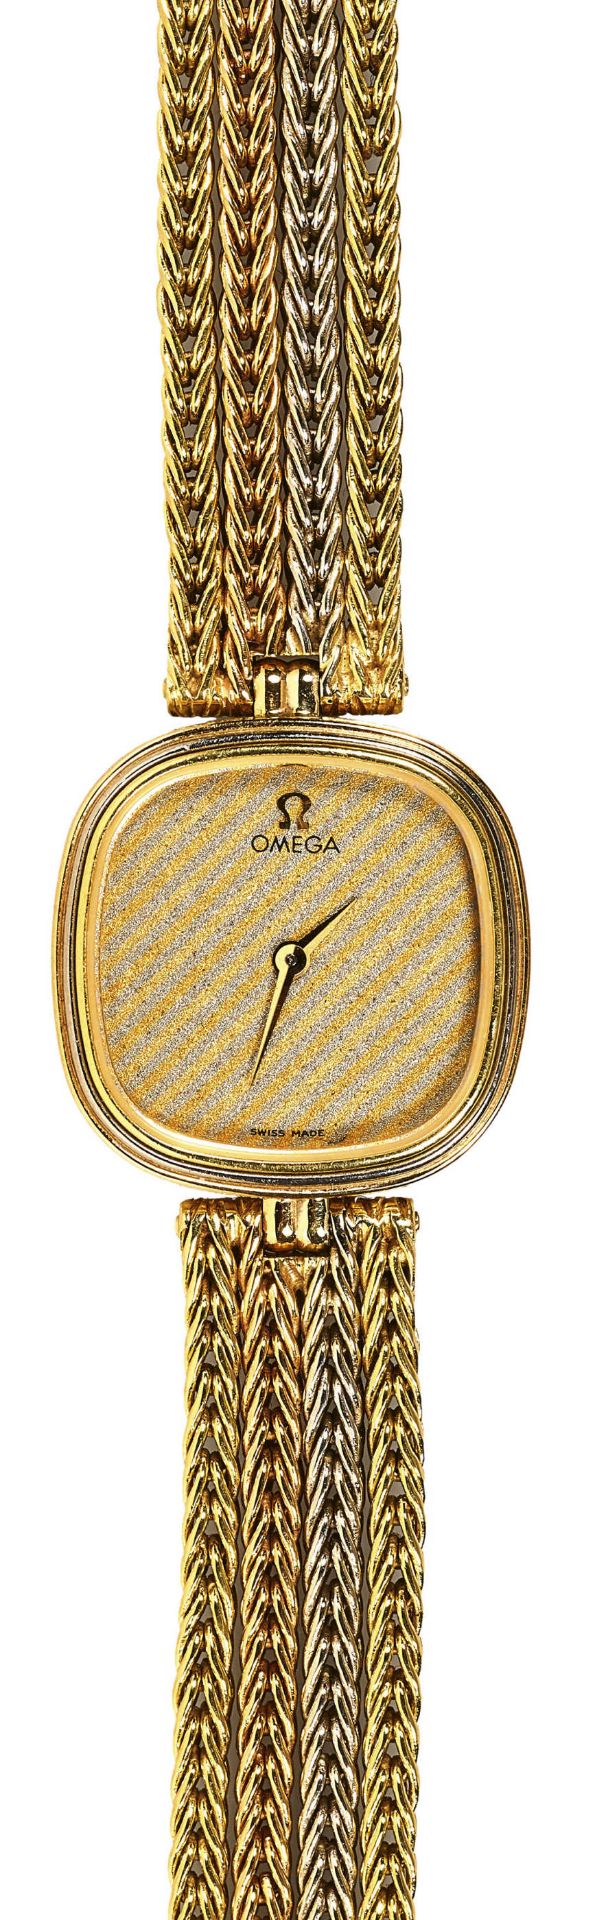 OMEGALady's wristwatch.Manufacturer/Manufaktur: Omega, Bienne/Biel. Year/Jahr: Ca. 1980-1990. - Bild 2 aus 2